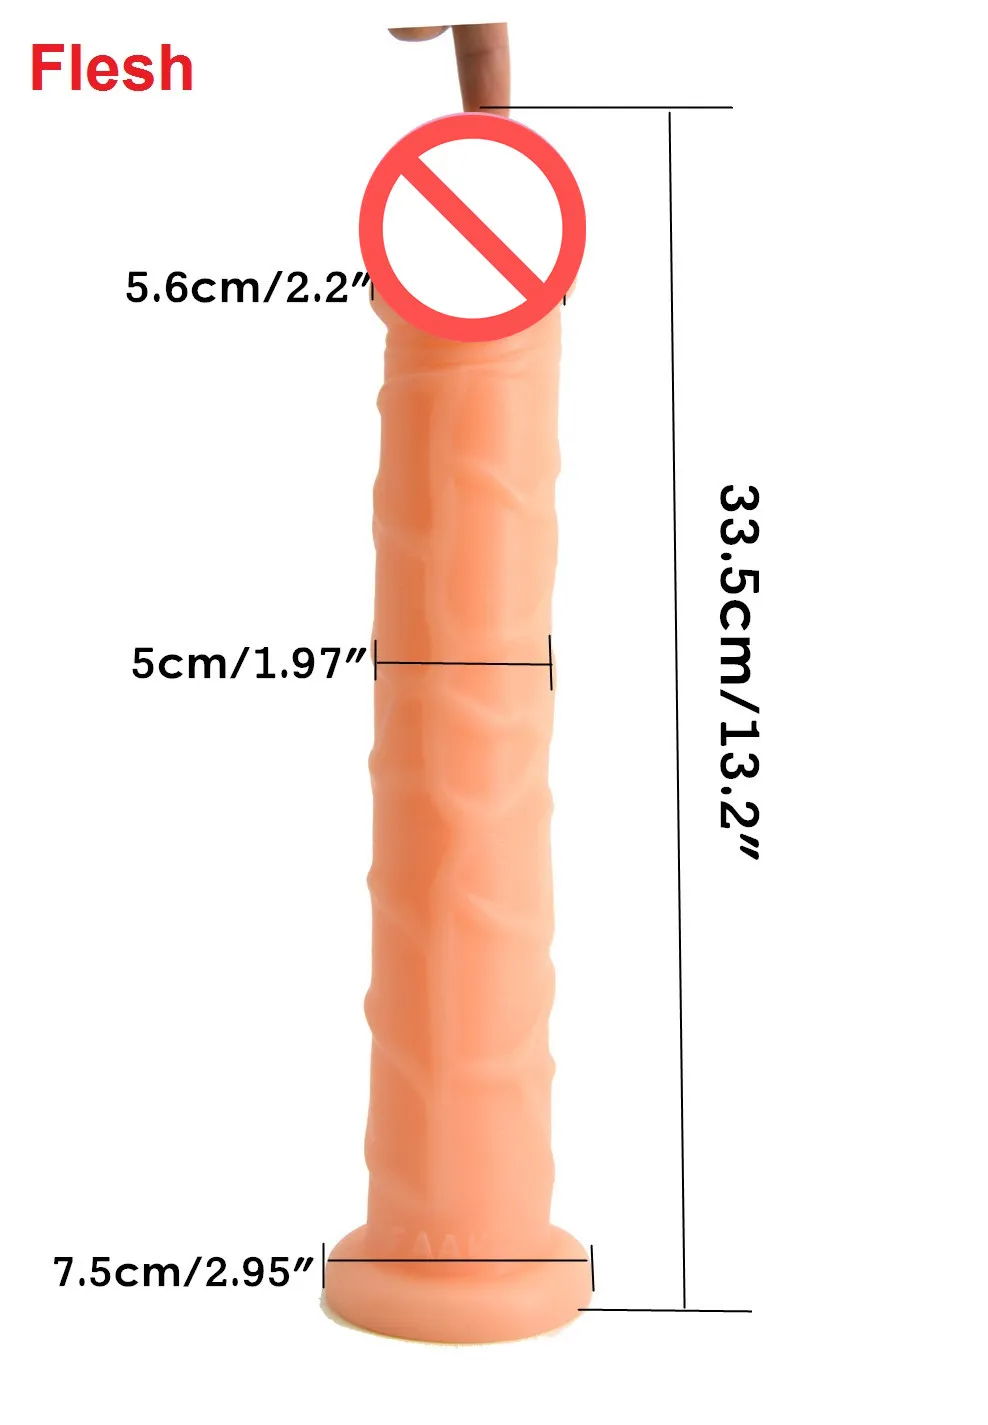 Realistyczne 33cm Długi Dildo z przyssawką Sztuczny Penis Dick Vagina Plug G Spot Stymuluj Kobiet Masturbacja Seks Zabawki dla kobiet 5 C